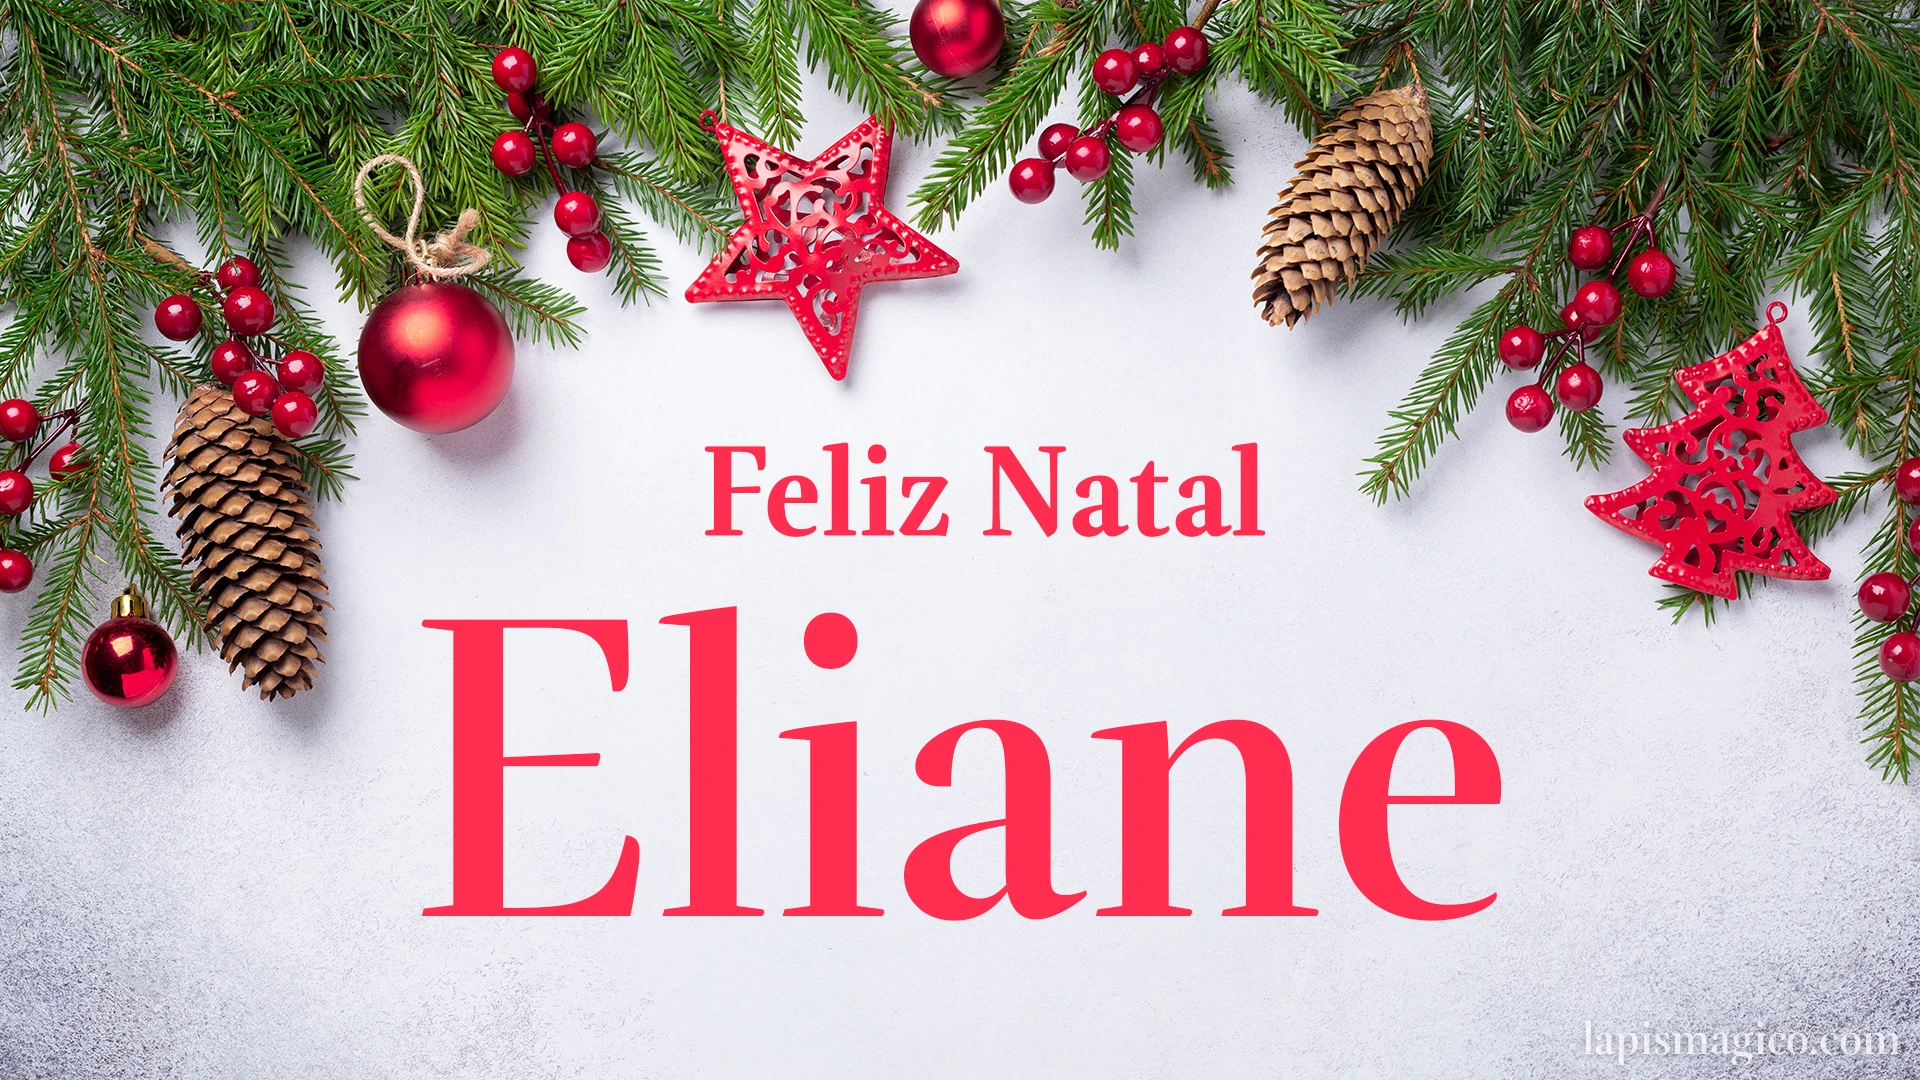 Oh Eliane, cinco postais de Feliz Natal Postal com o teu nome